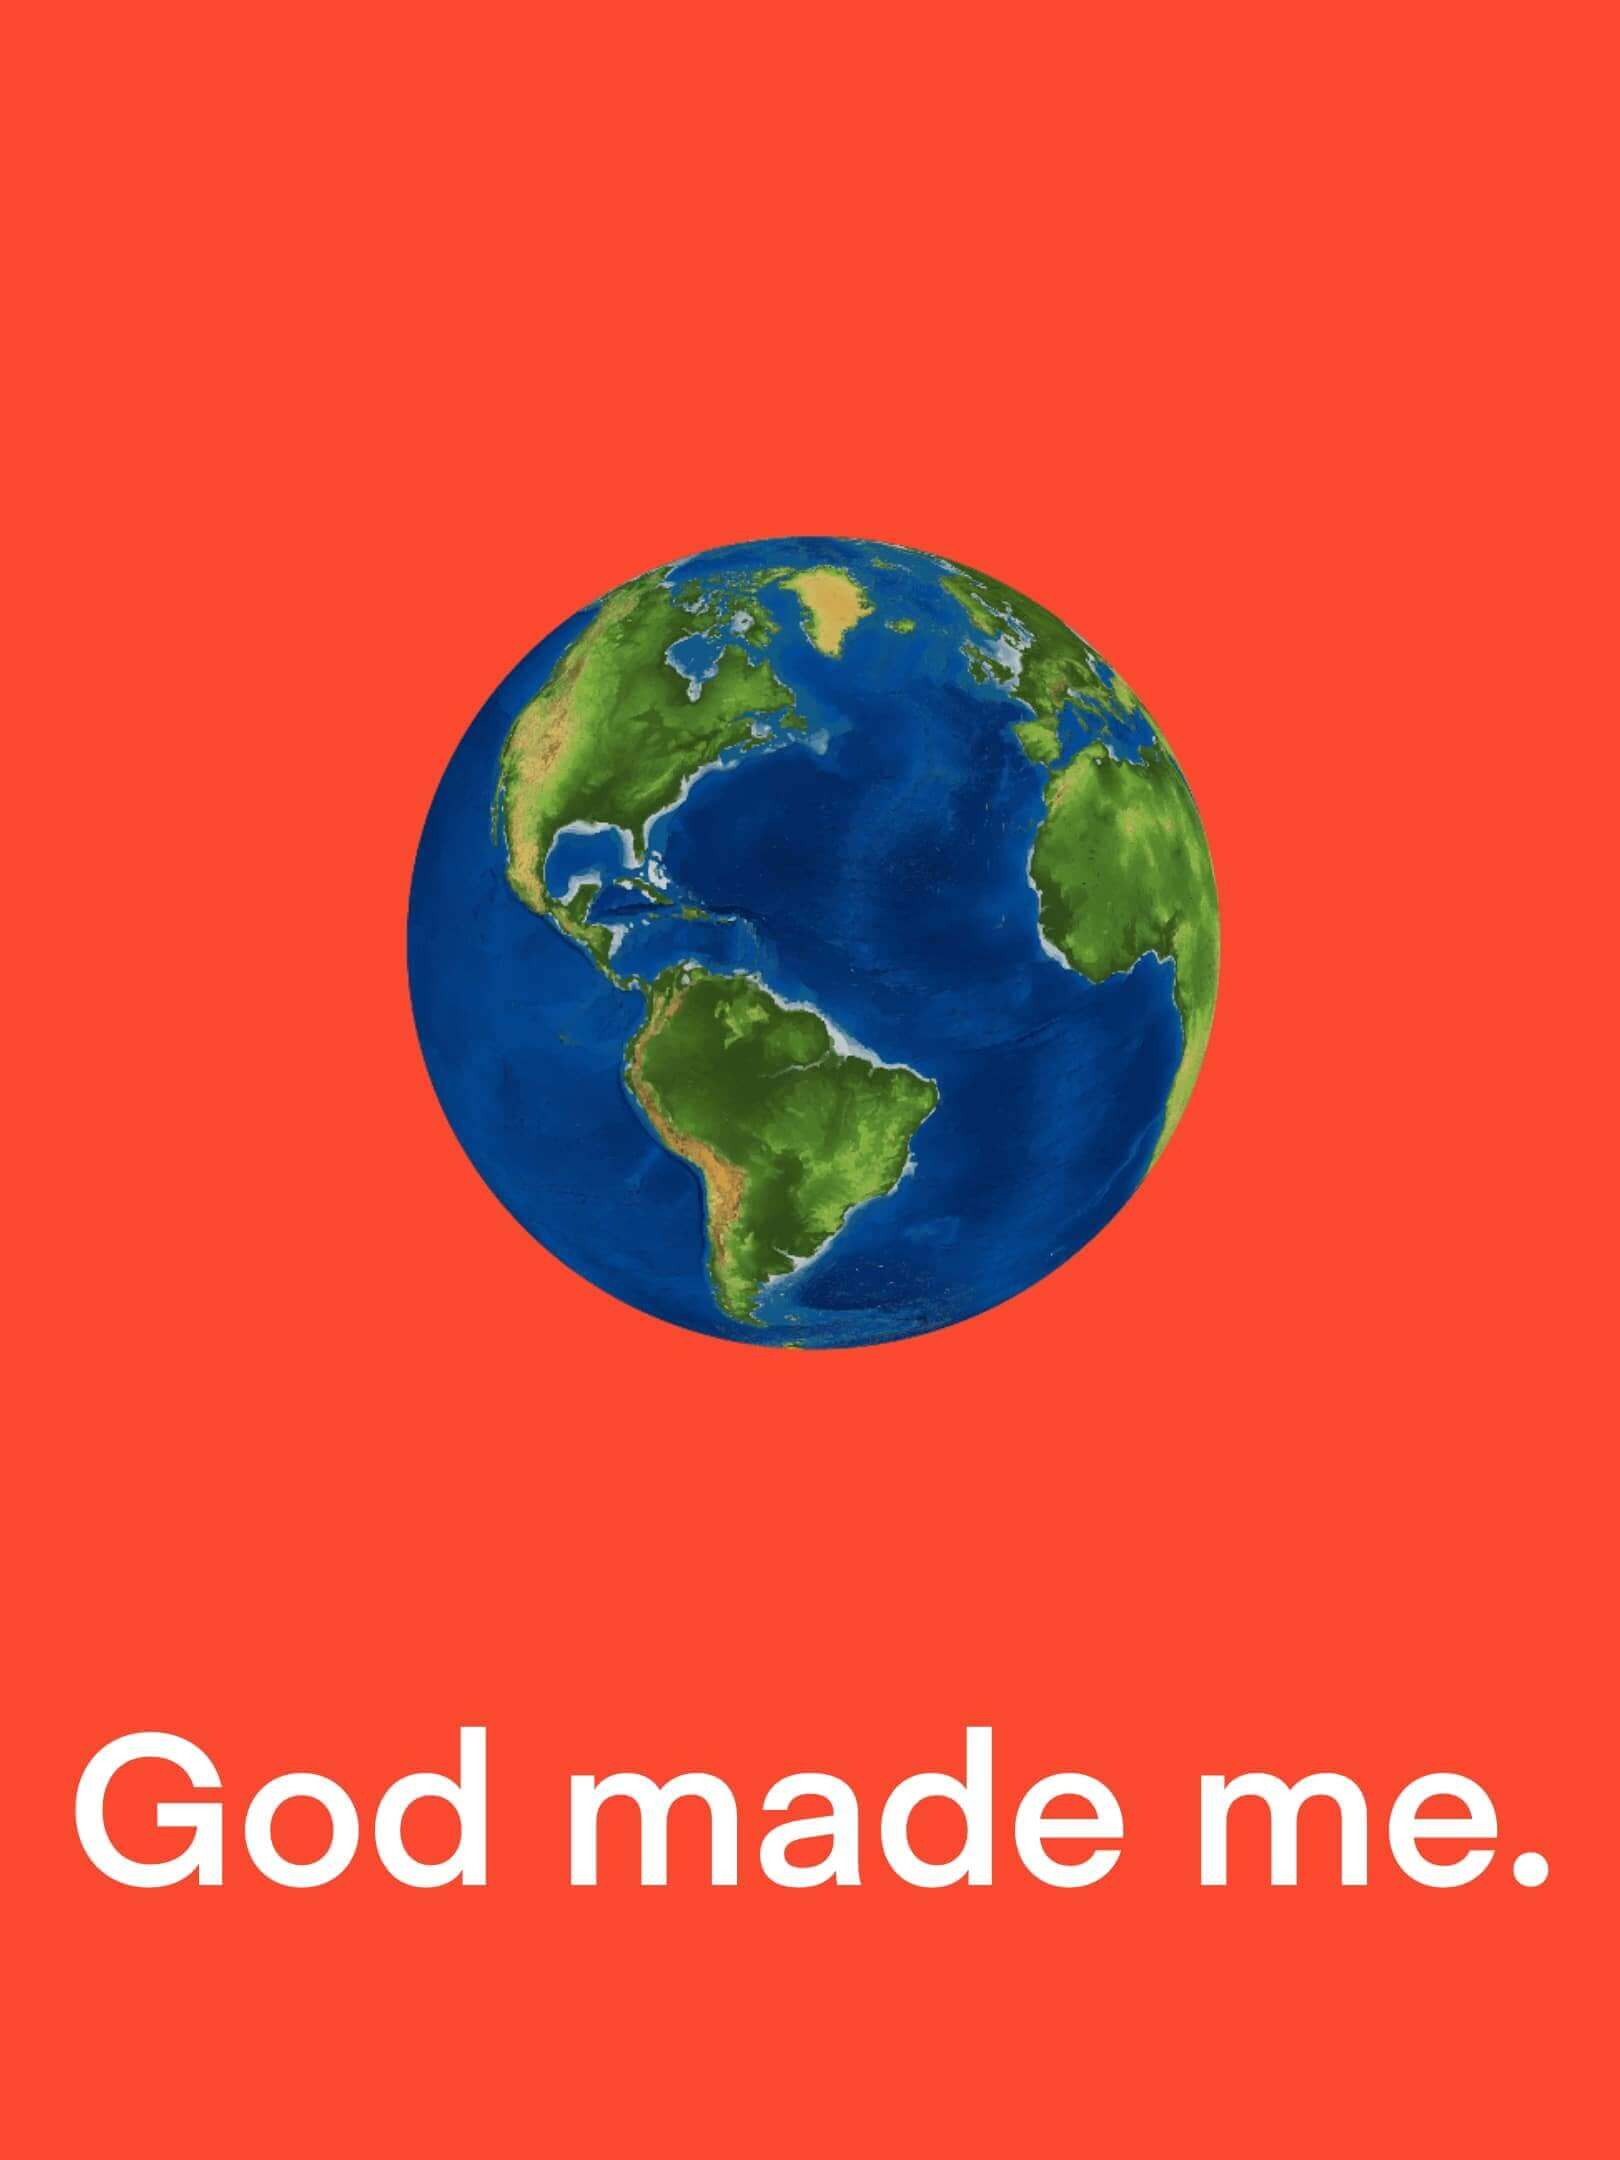 God made you.